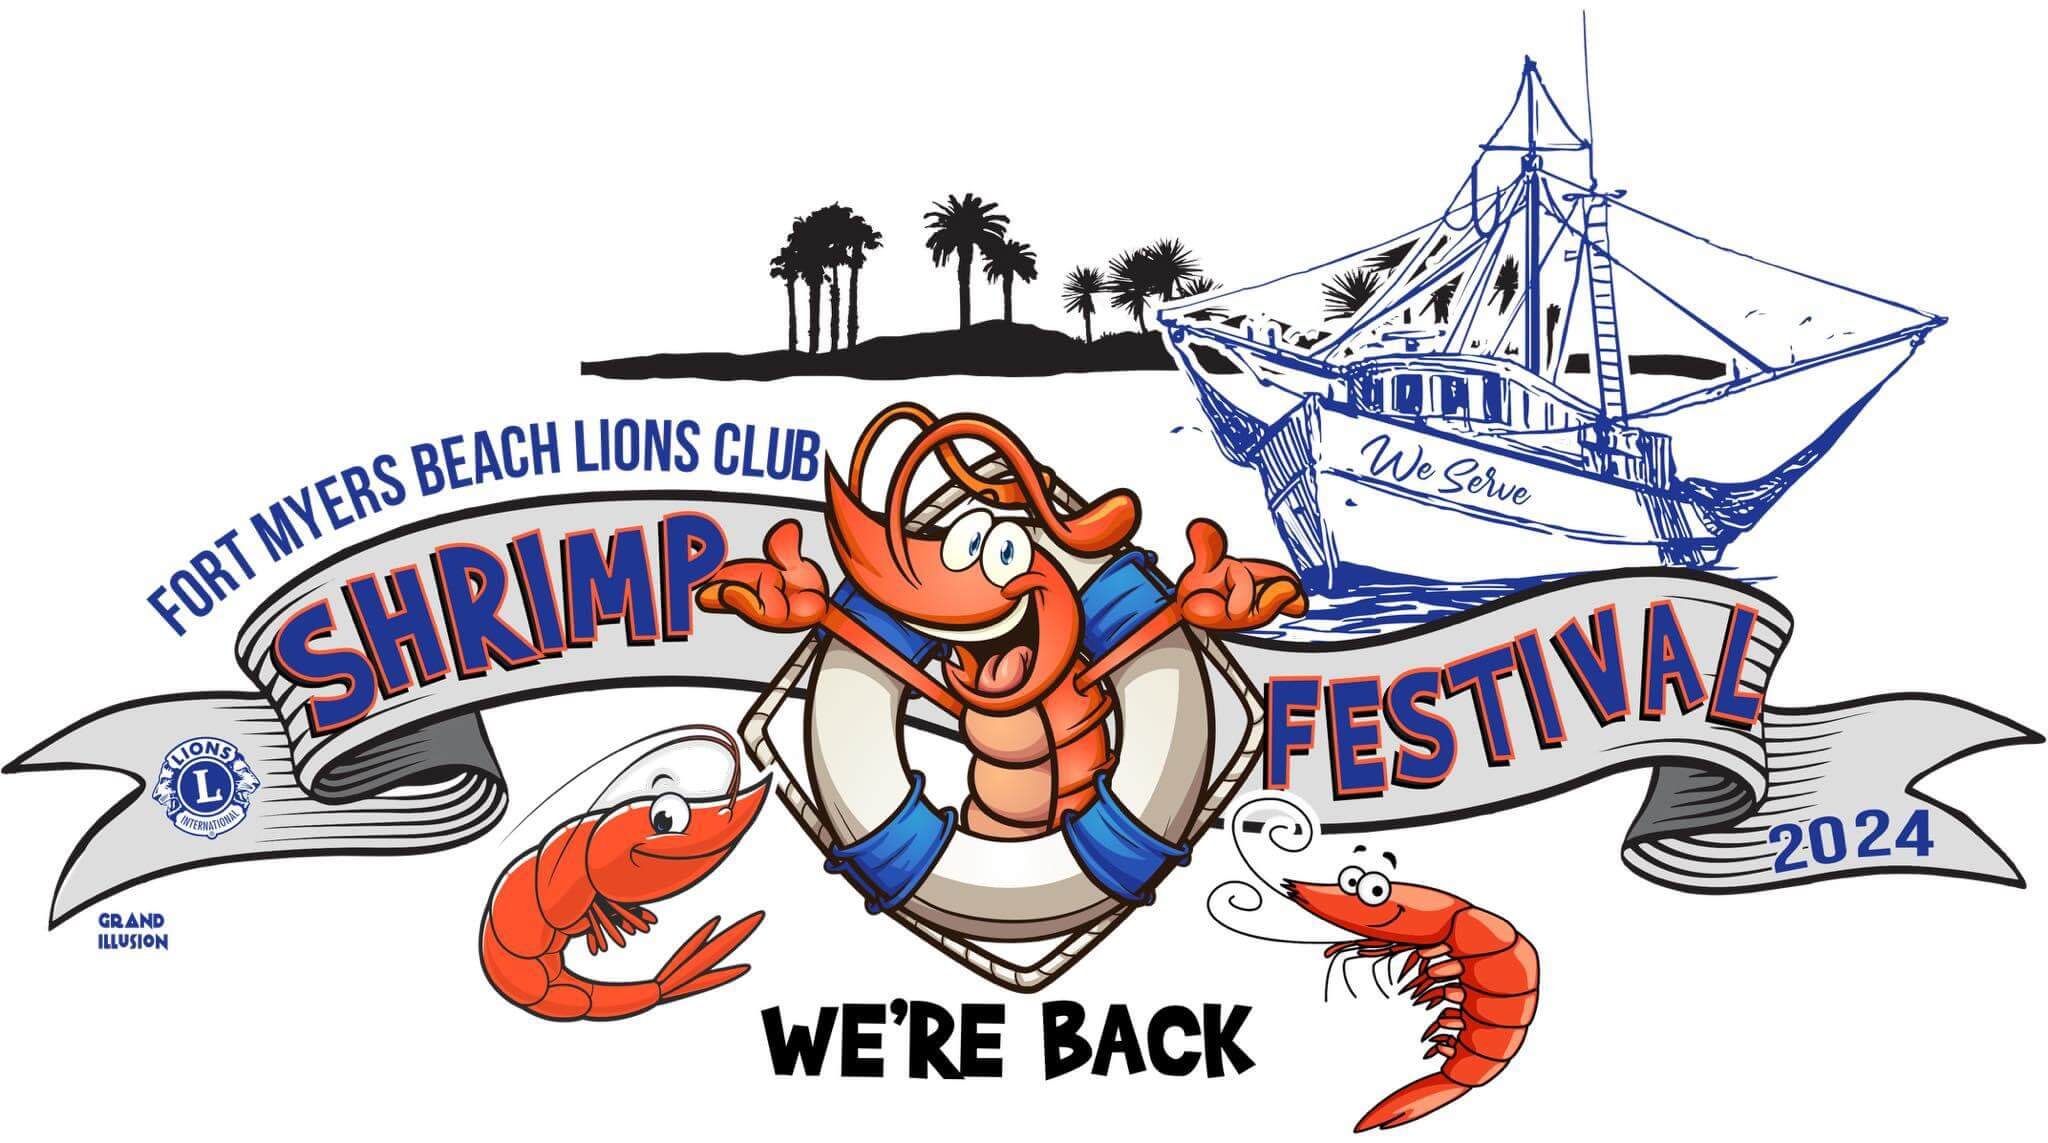 Fort Myers Beach Shrimp Festival Celebrating Our Shrimp Industry